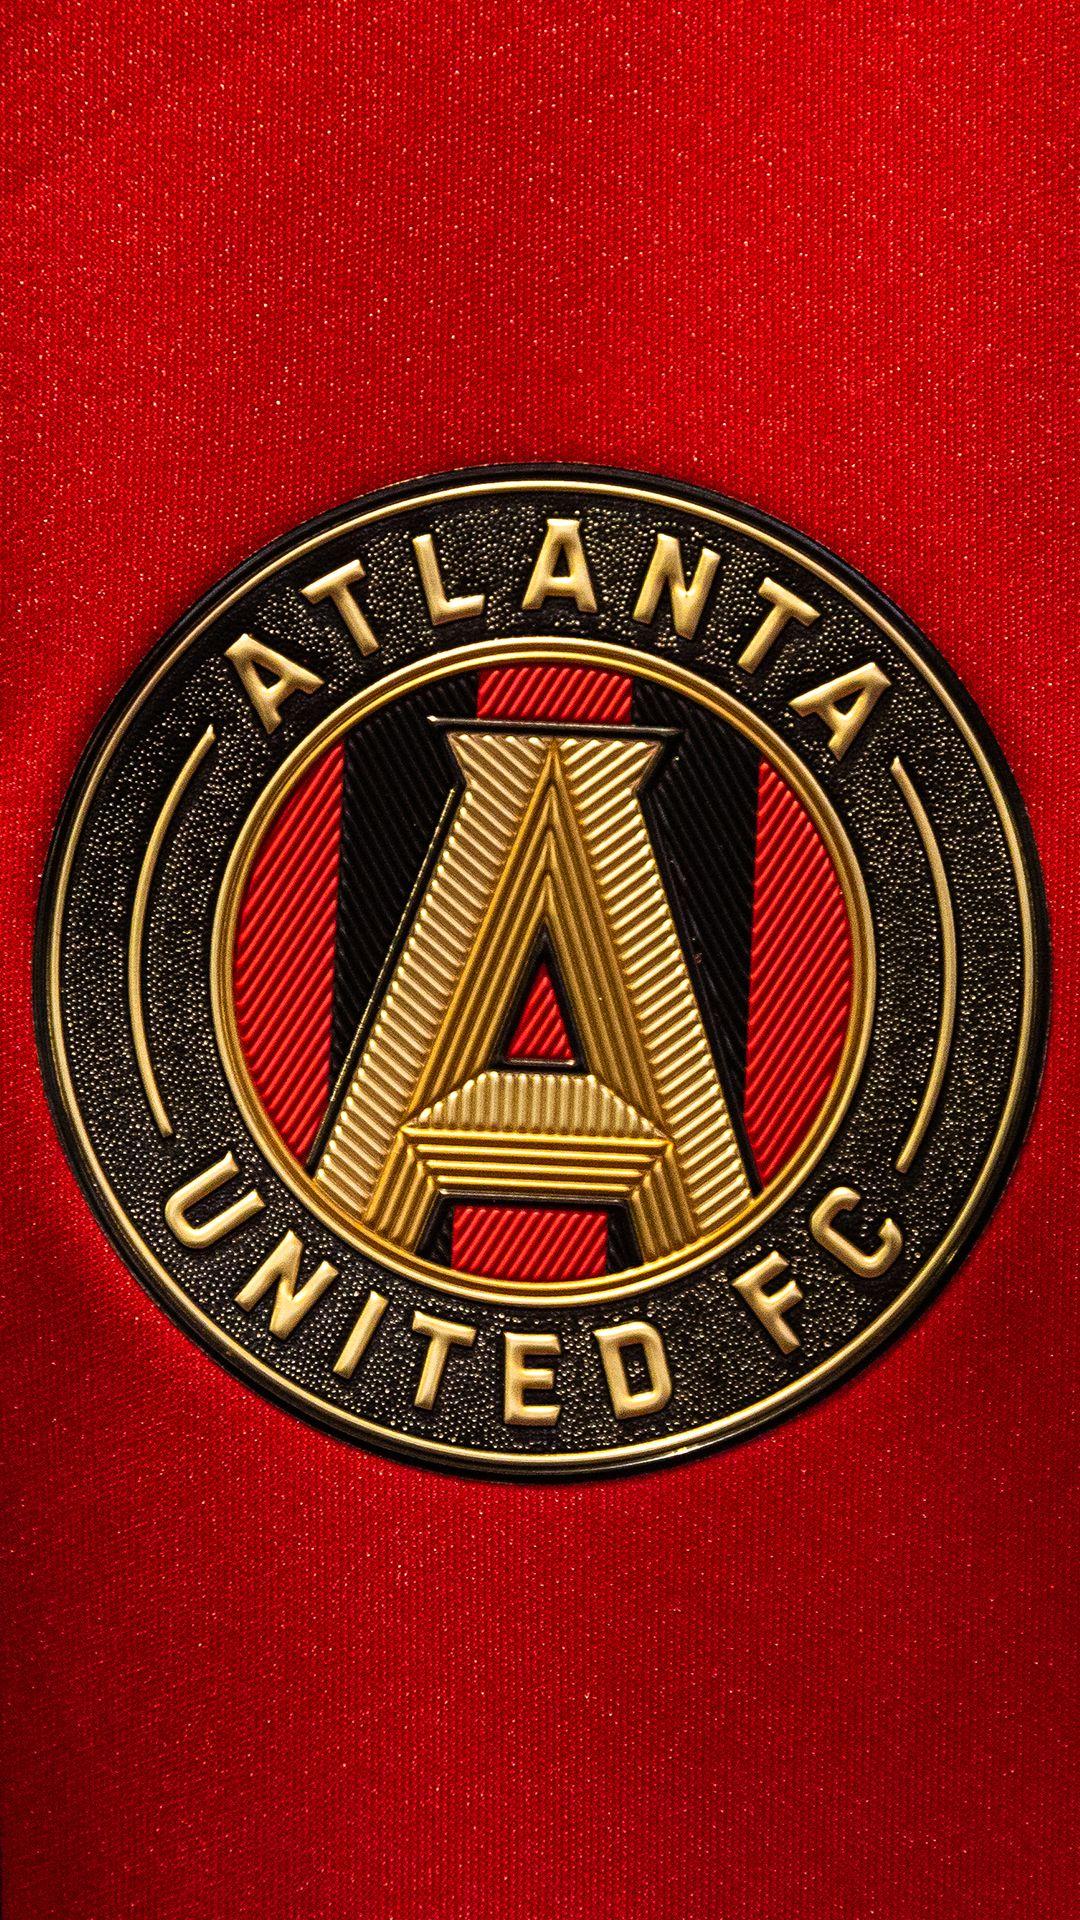 Atlanta United Logo Wallpaper #AtlantaUnited #AtlantaUnitedWallpaper